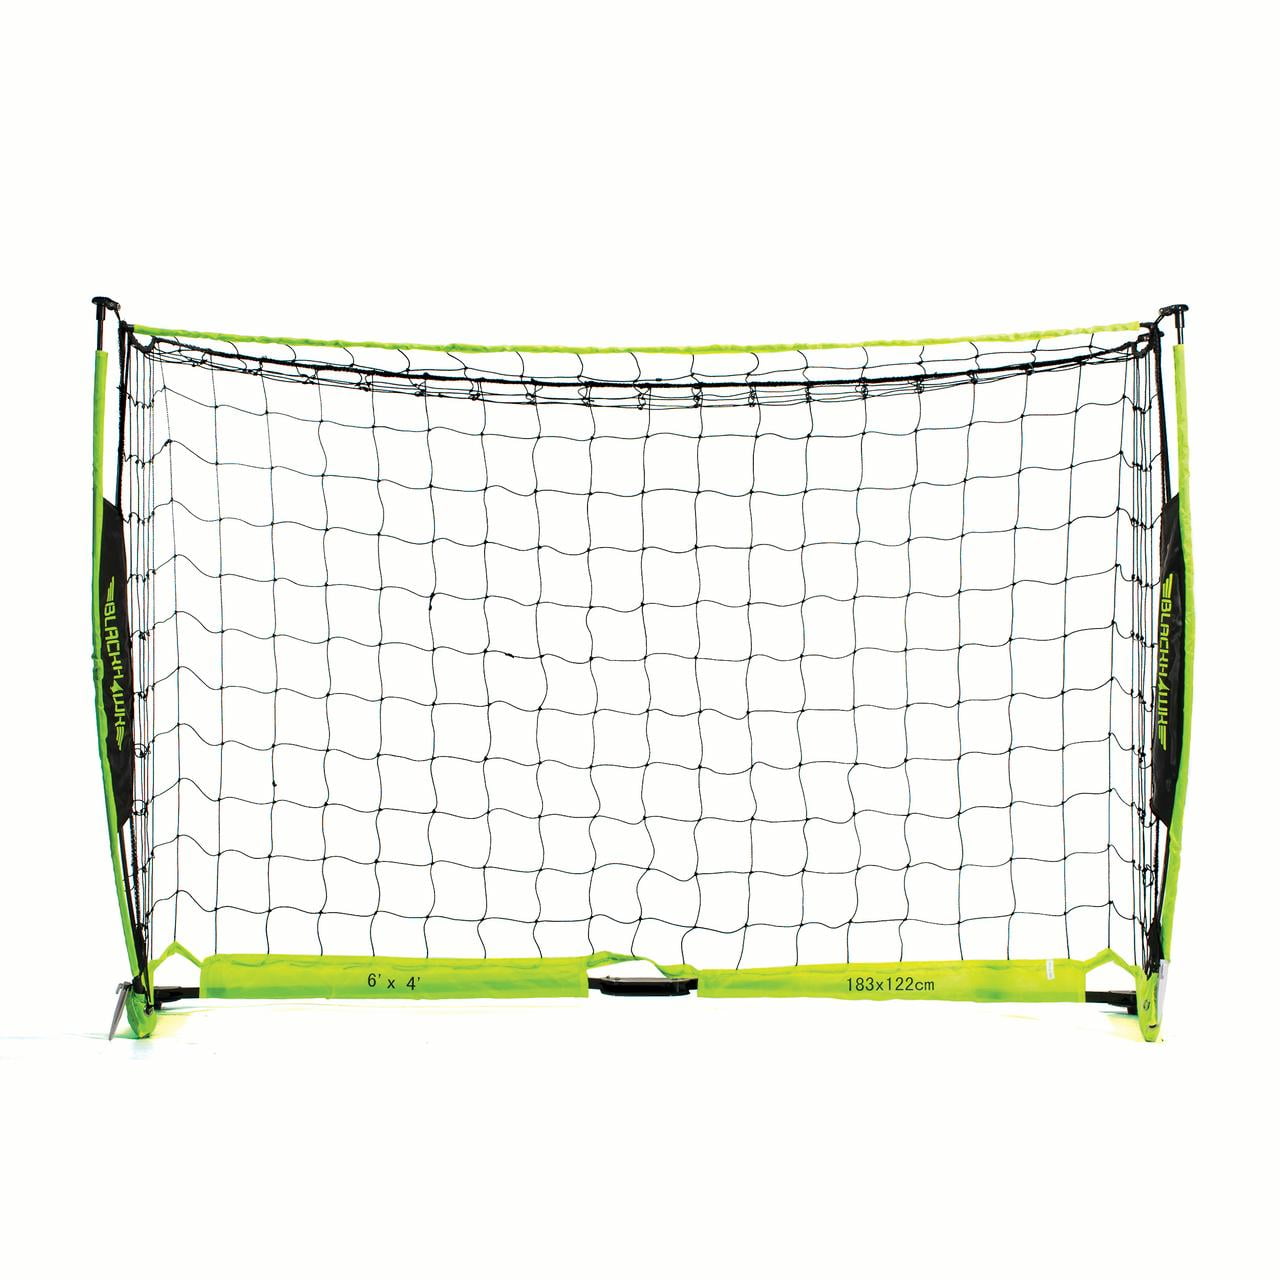 Green 6 x 4 Franklin Sports Blackhawk Deluxe Flexpro Portable Soccer Goal 